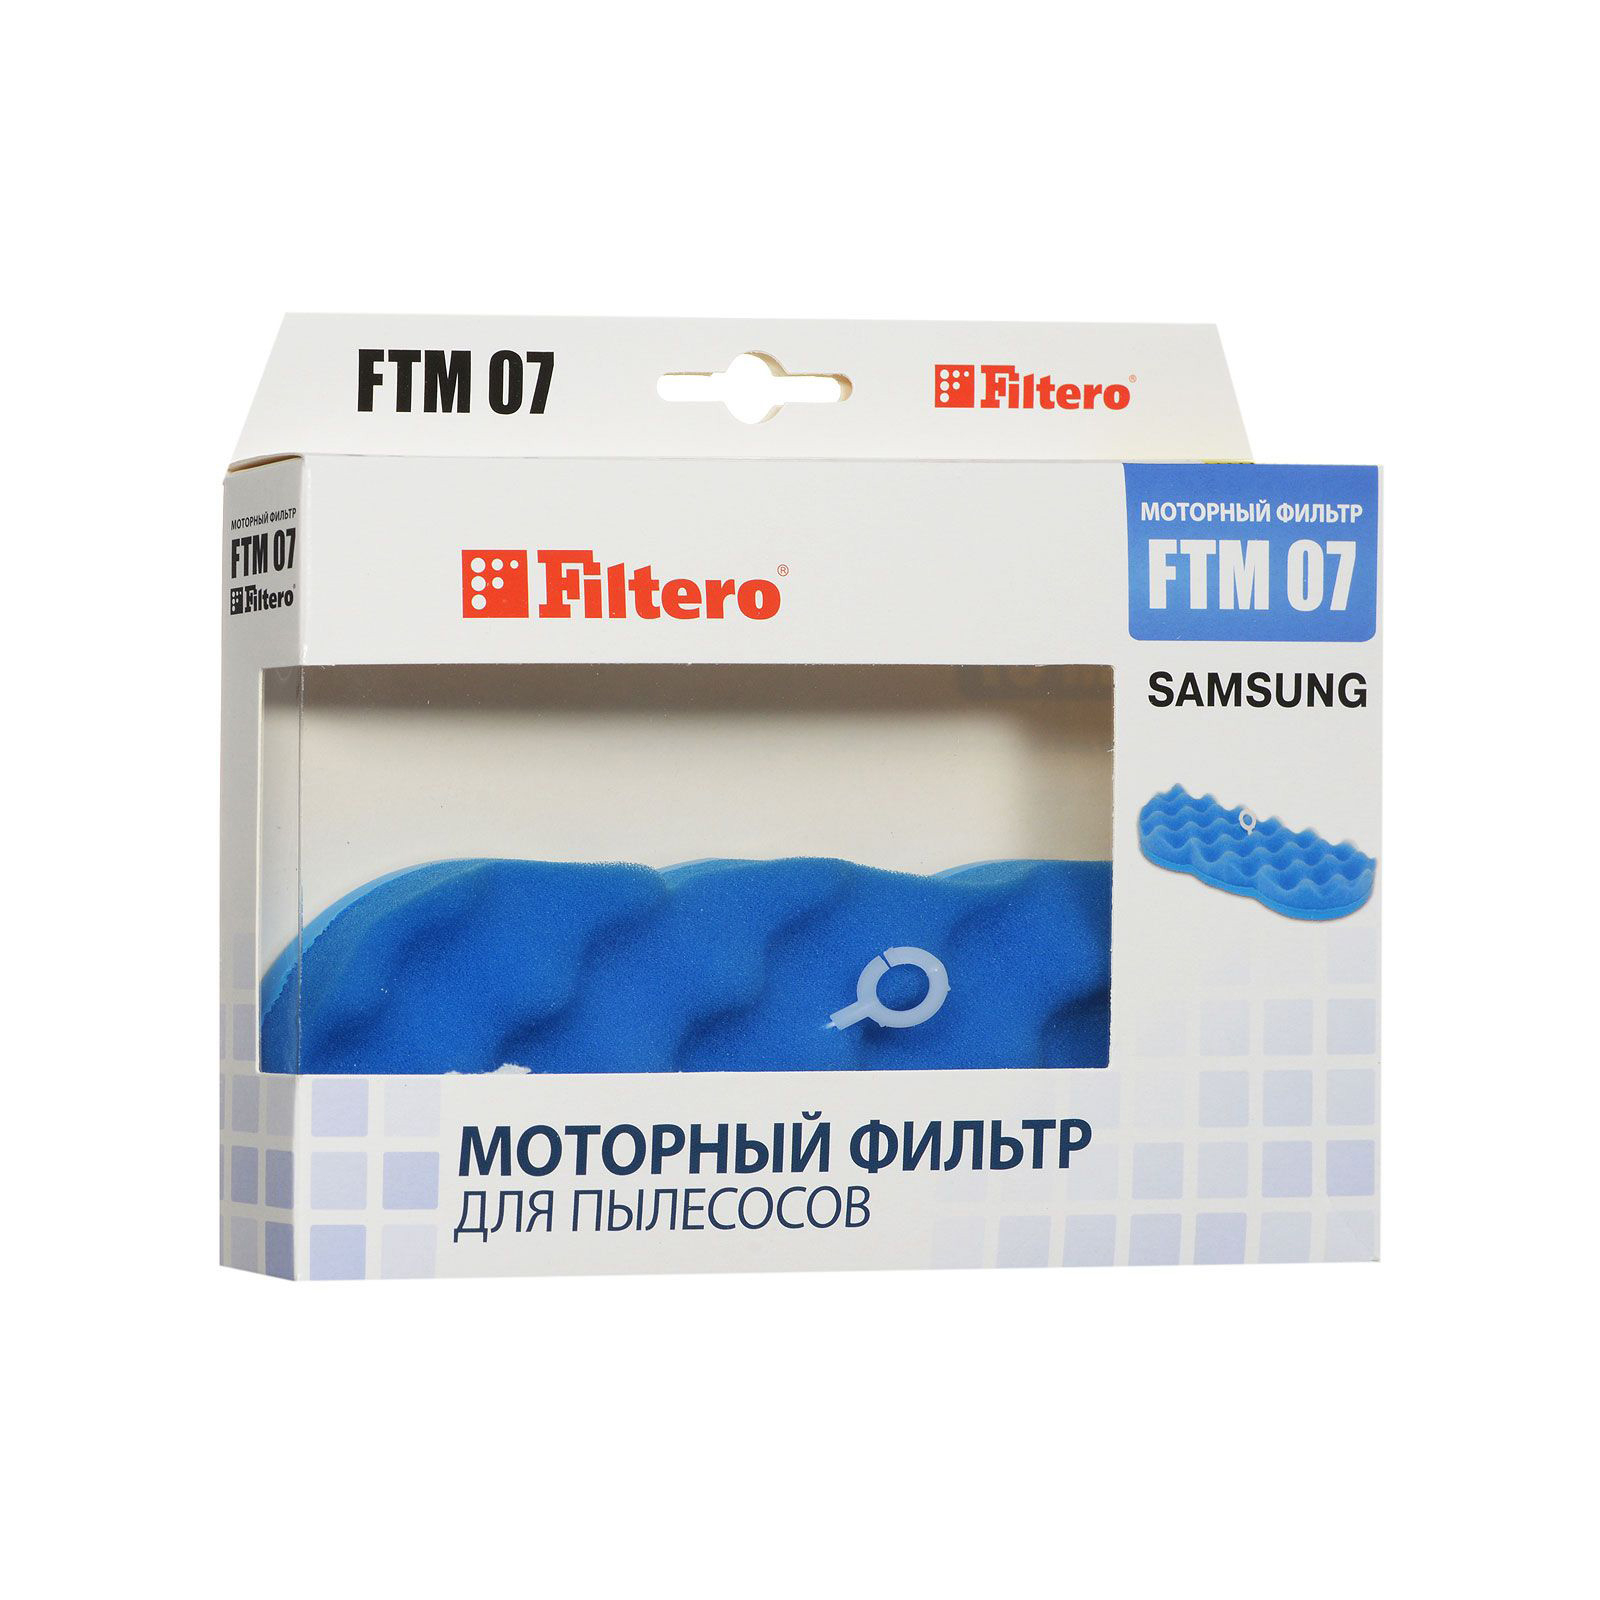 Фильтр для пылесоса Filtero FTM 07